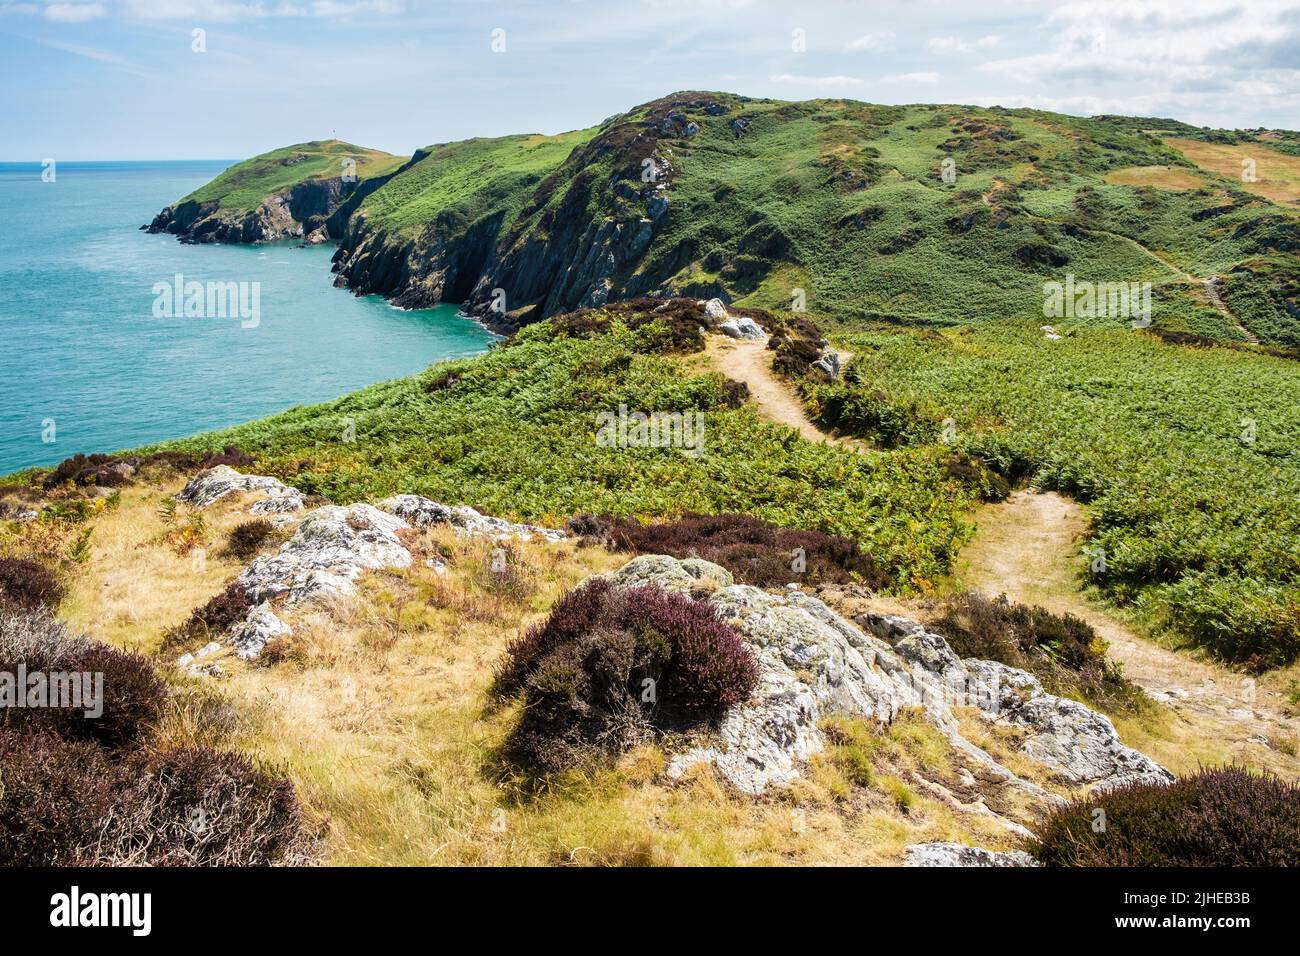 Vue panoramique le long du chemin de la côte d'Anglesey et superbe côte en direction de Porth Wen depuis Cemaes, l'île d'Anglesey, le pays de Galles, le Royaume-Uni, la Grande-Bretagne, Europe Banque D'Images